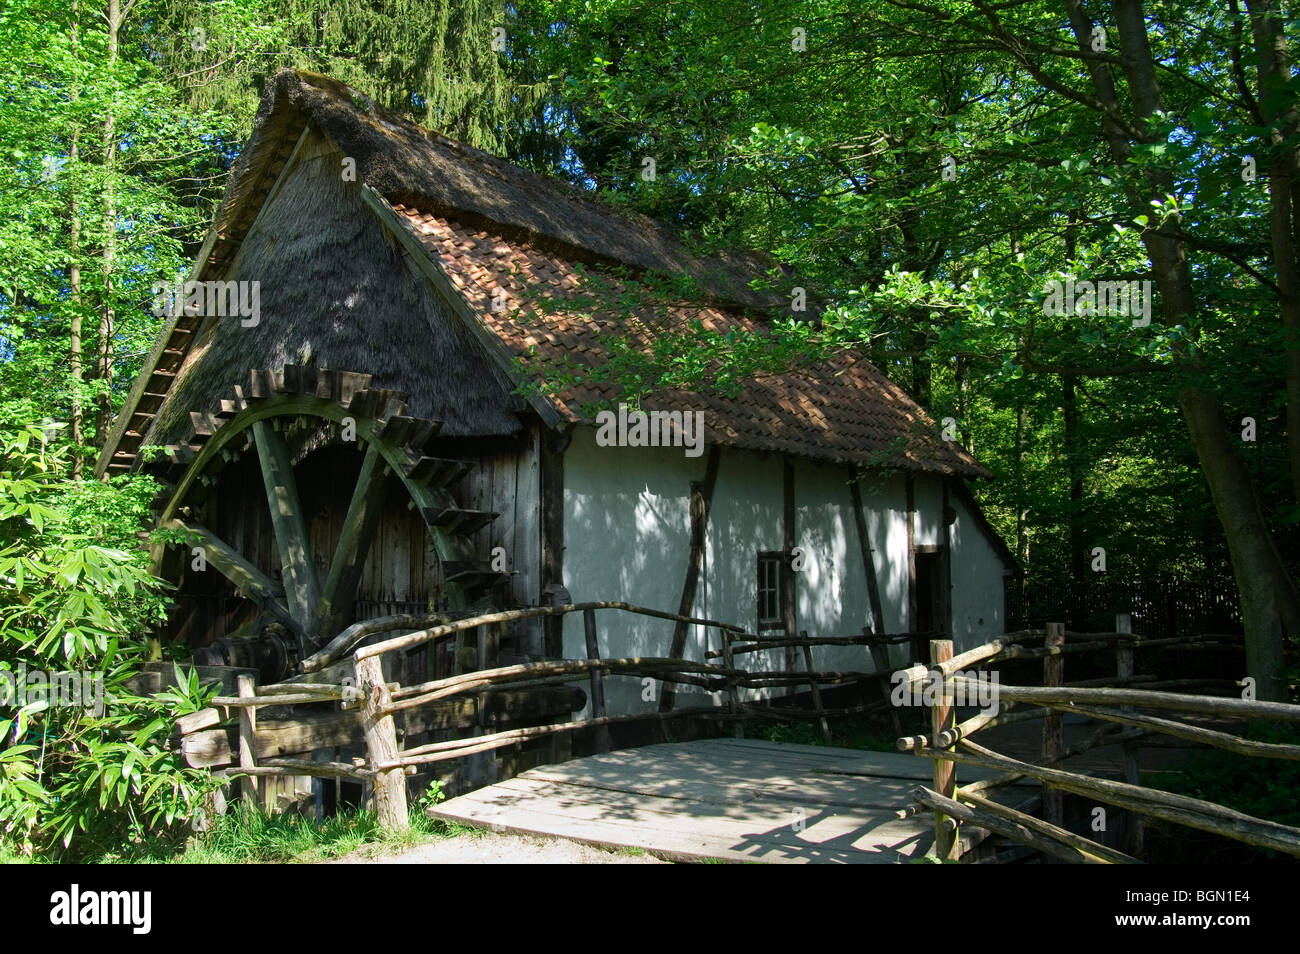 Roue à eau en bois ancien moulin à eau de forêt à le musée en plein air Bokrijk, Belgique Banque D'Images